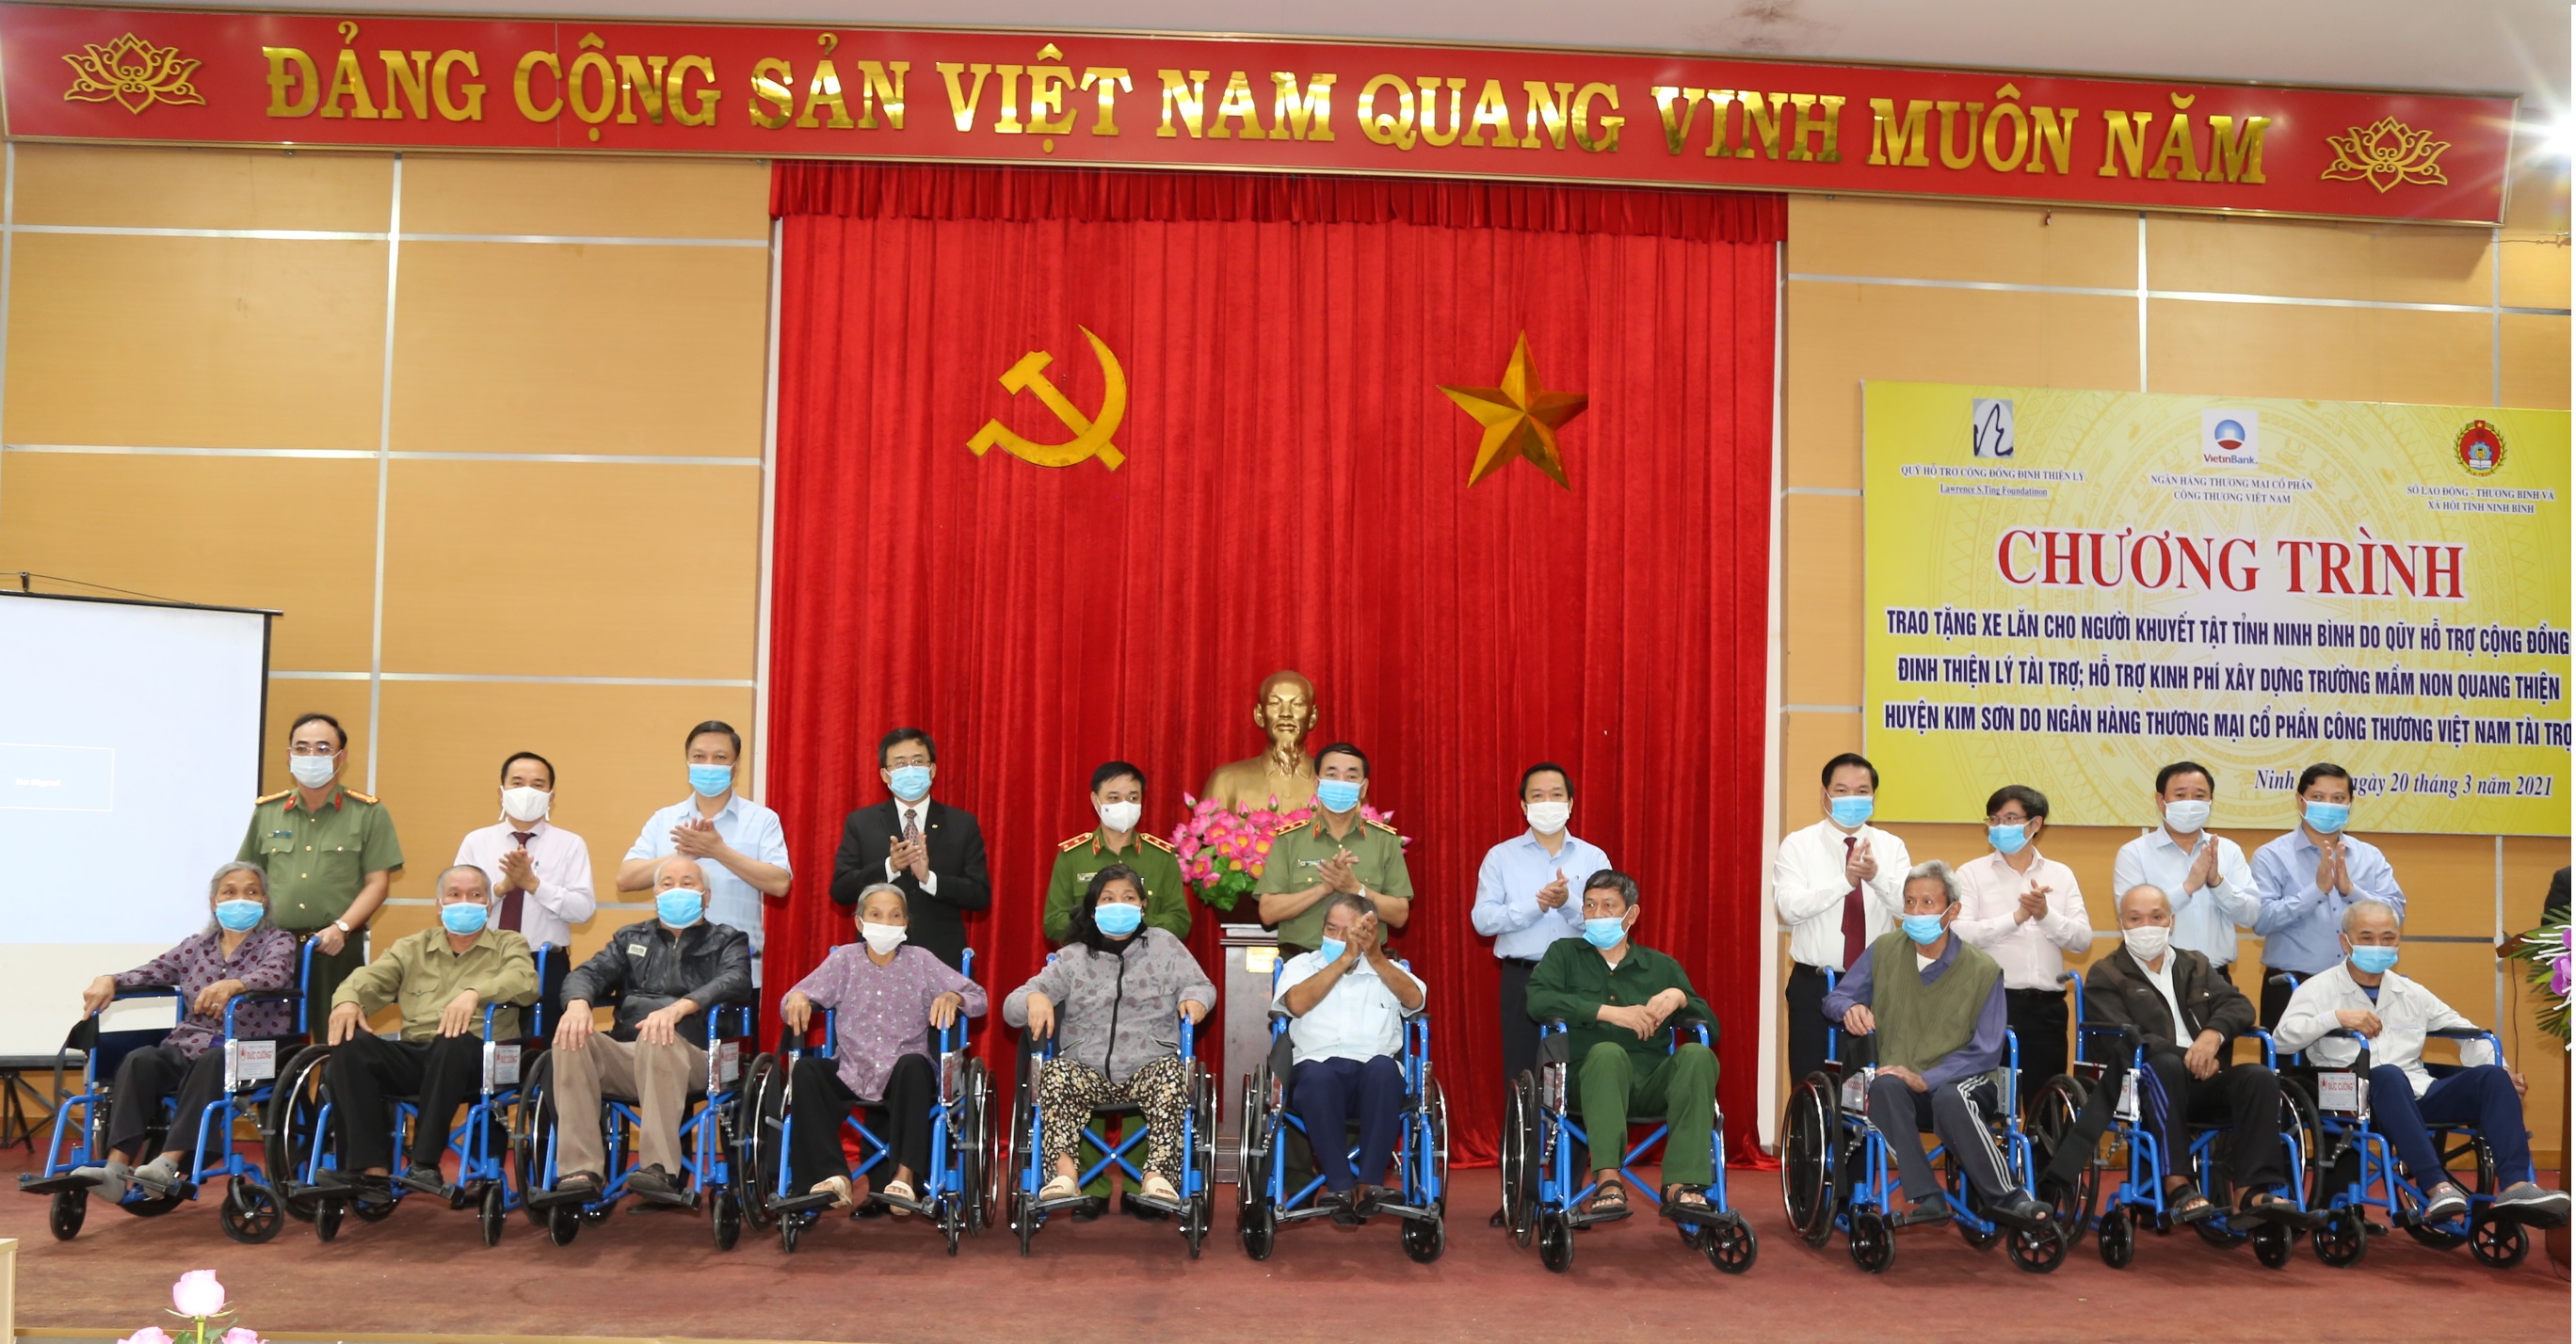 Nhà tài trợ trao tặng xe lăn cho người khuyết tật và hỗ trợ kinh phí xây dựng Trường Mầm non xã Quang Thiện, huyện Kim Sơn.